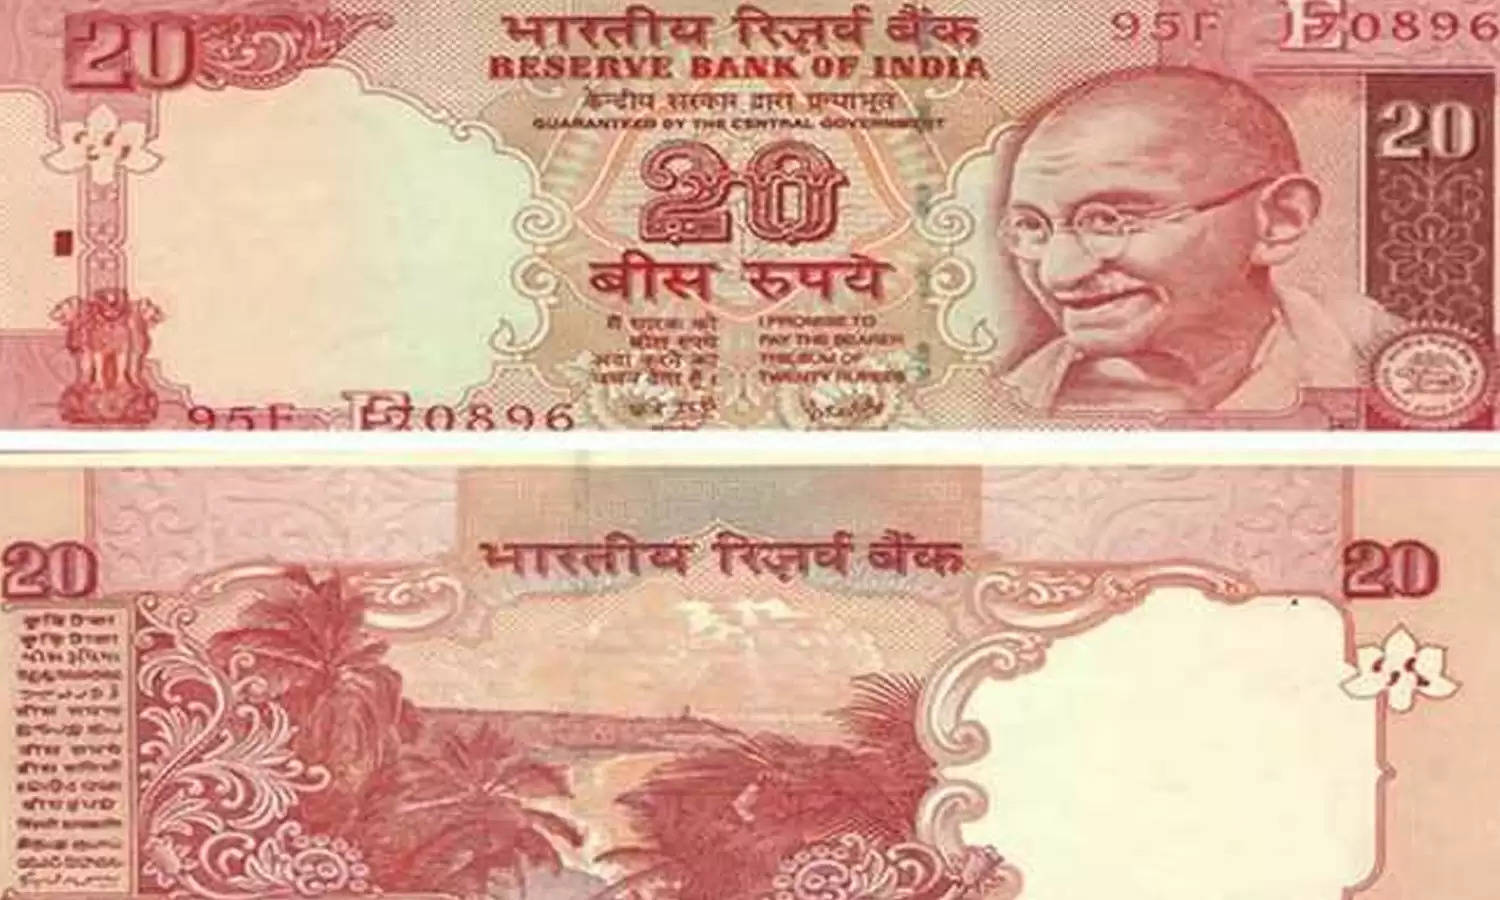 5 लाख रुपये में झटपट बेच डालें गुल्लक में रखा गुलाबी 20 का नोट, जानें आसान तरीका